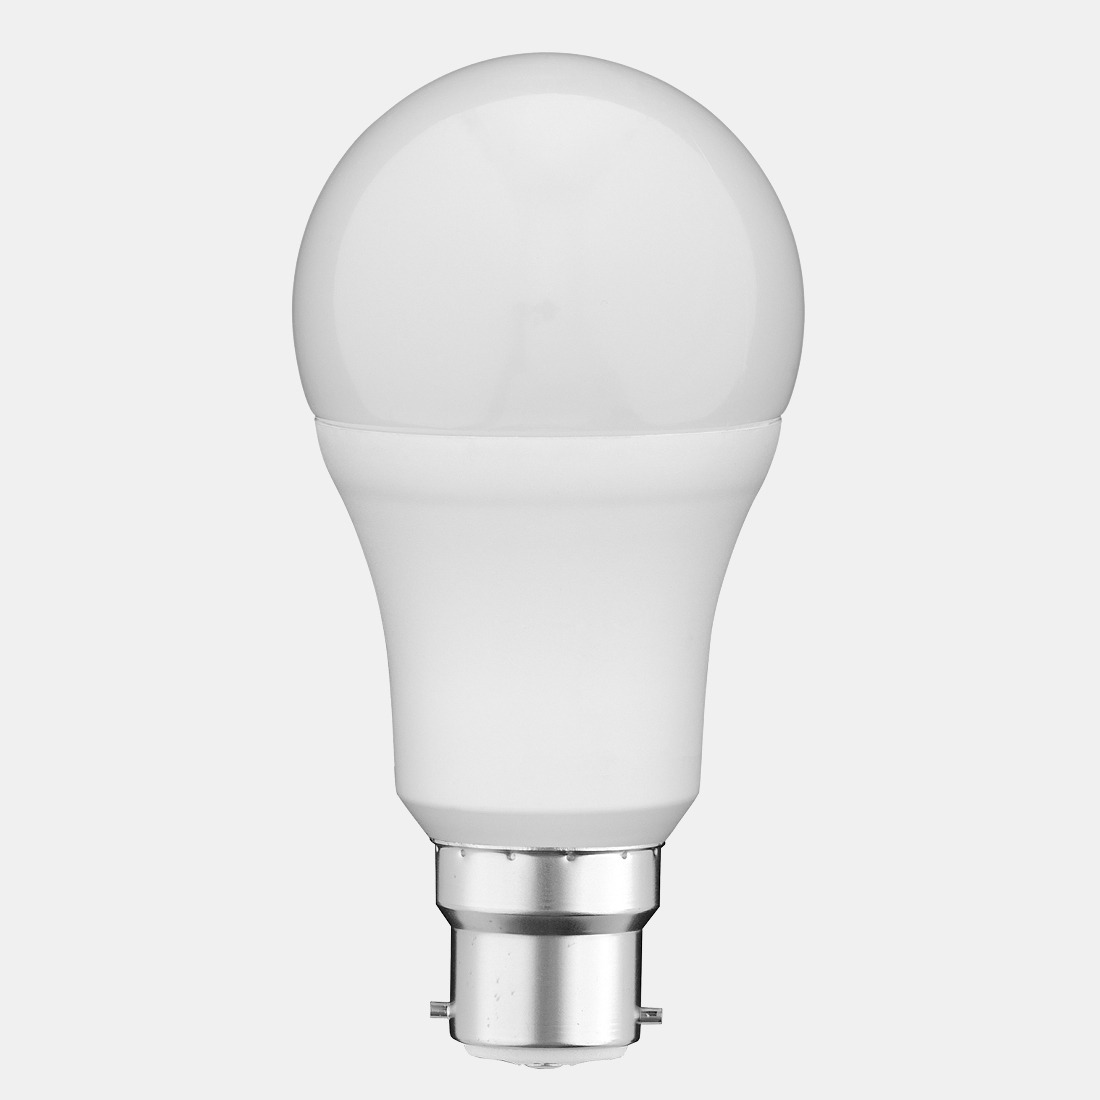 Lighting-guide-light-bulb